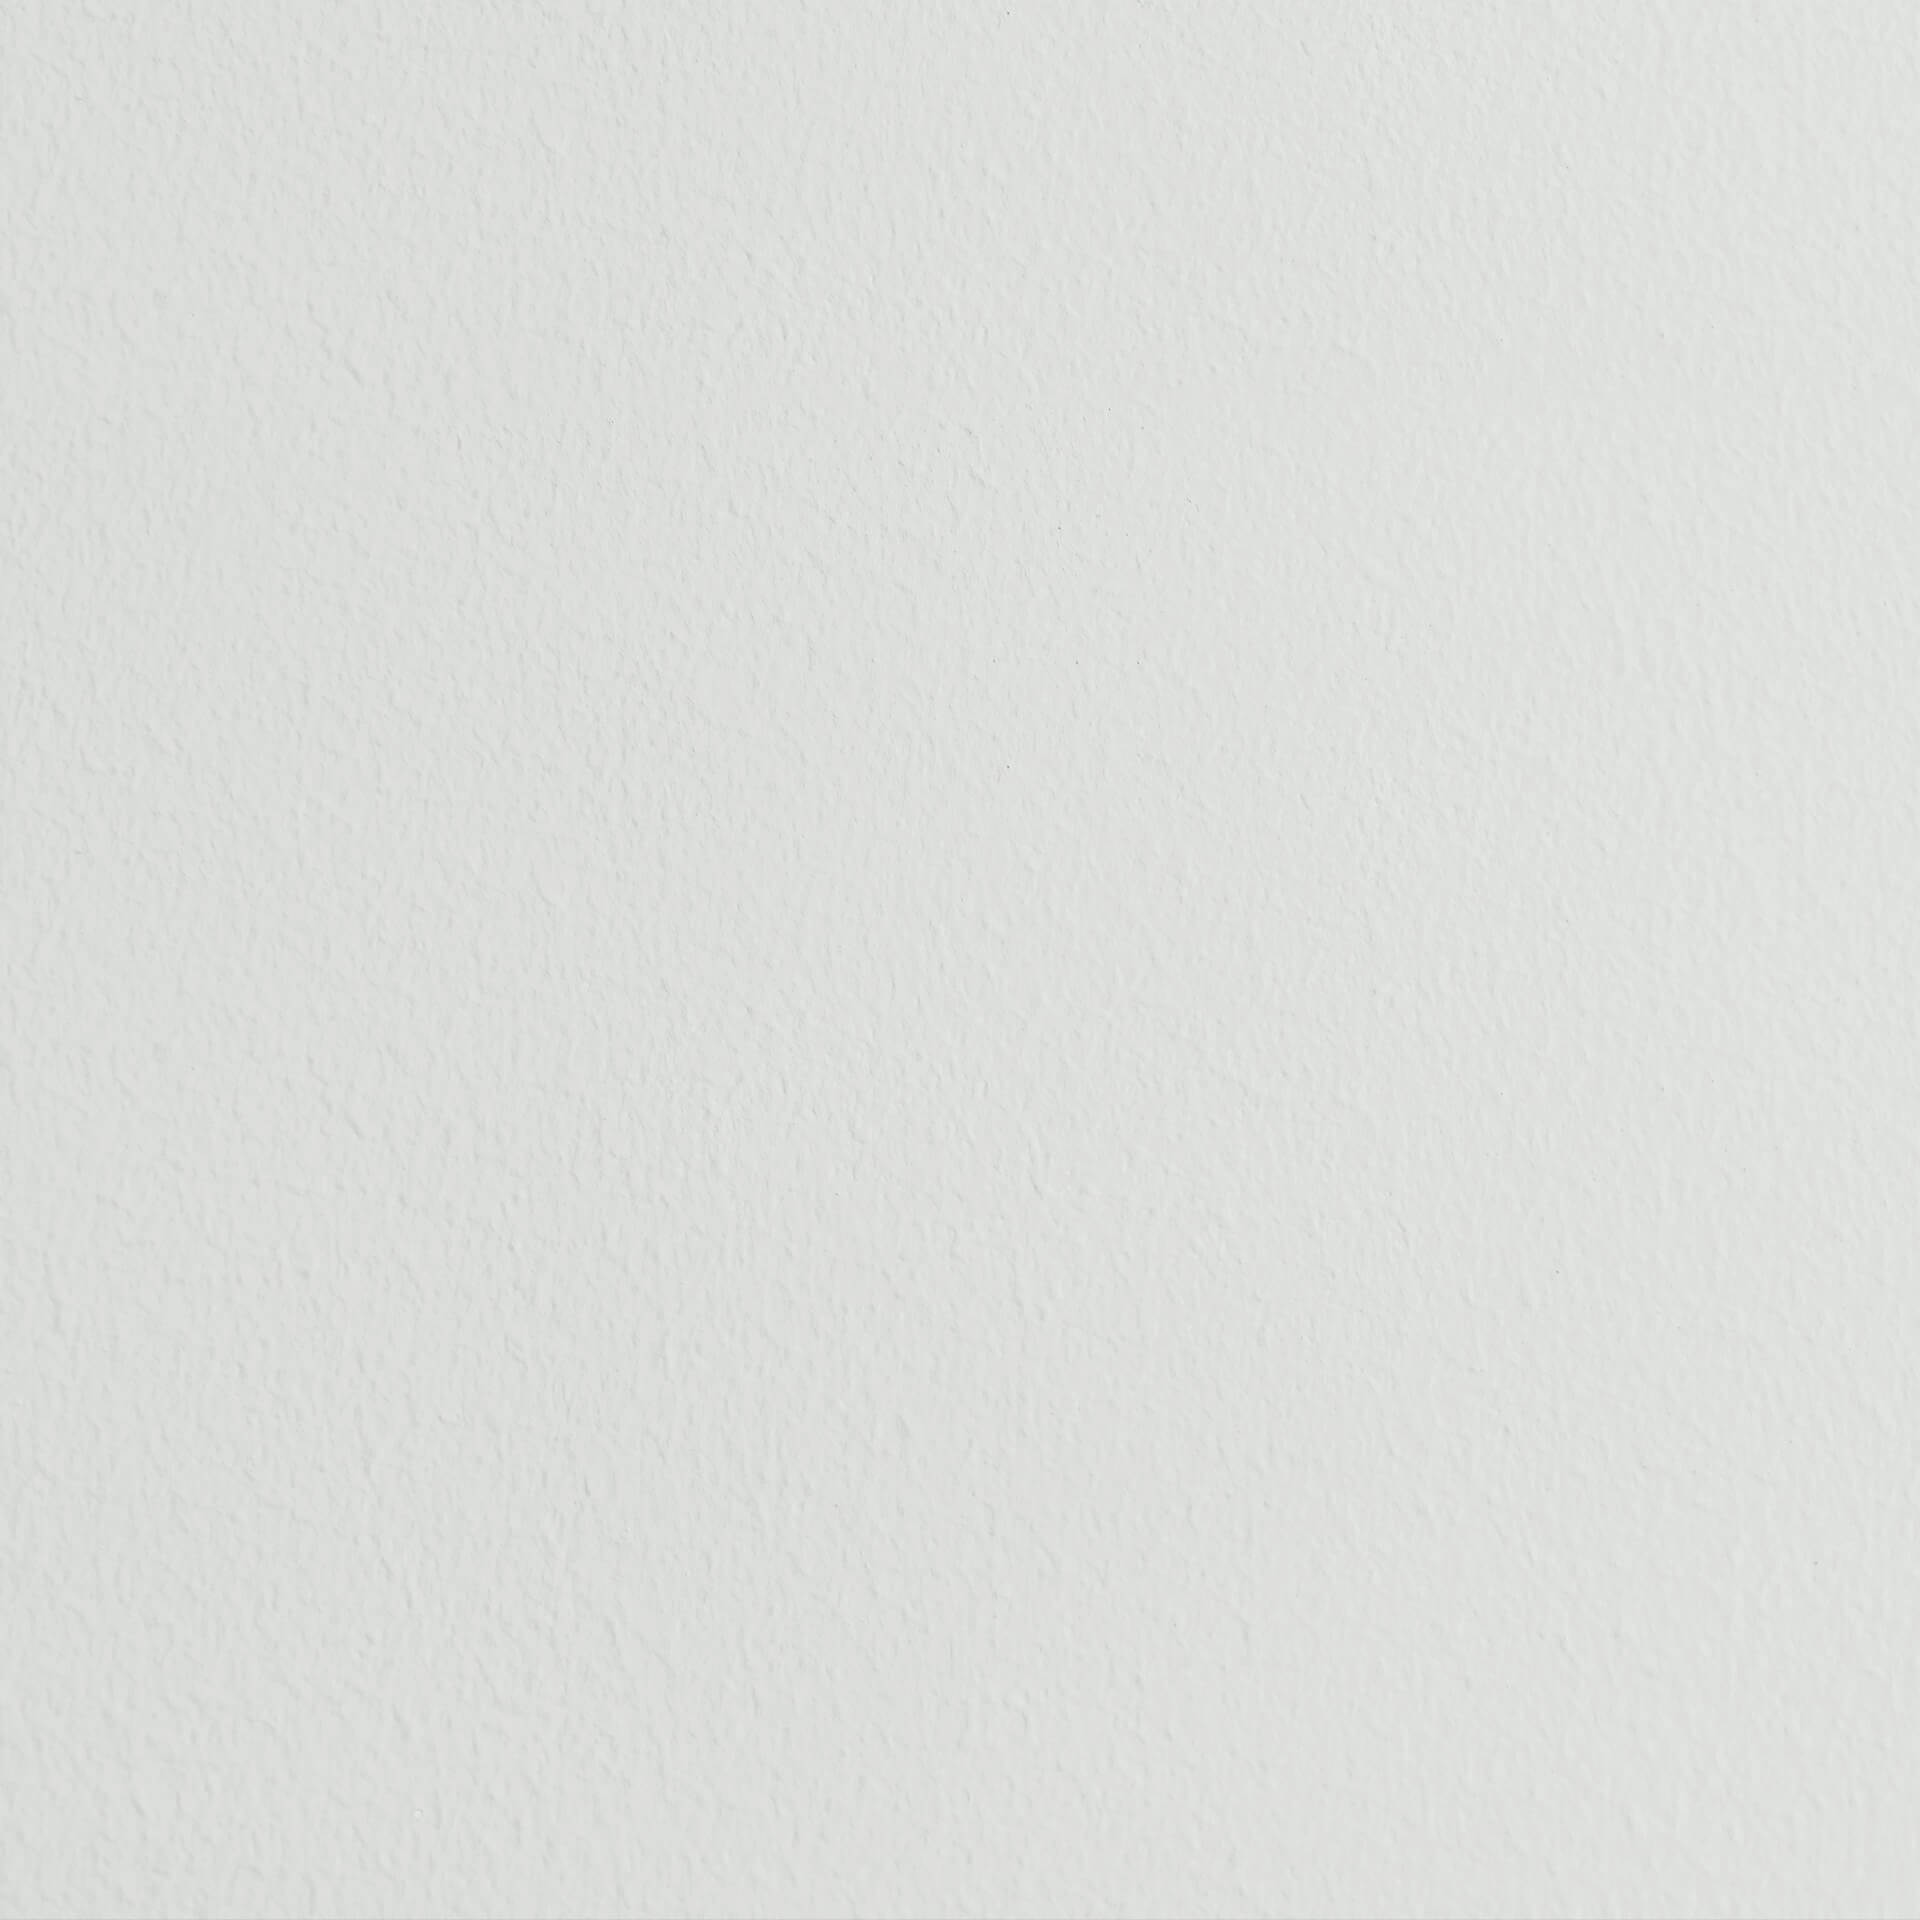 CosyColours Fresh White Kreidefarbe - 750ml, Lack Matt